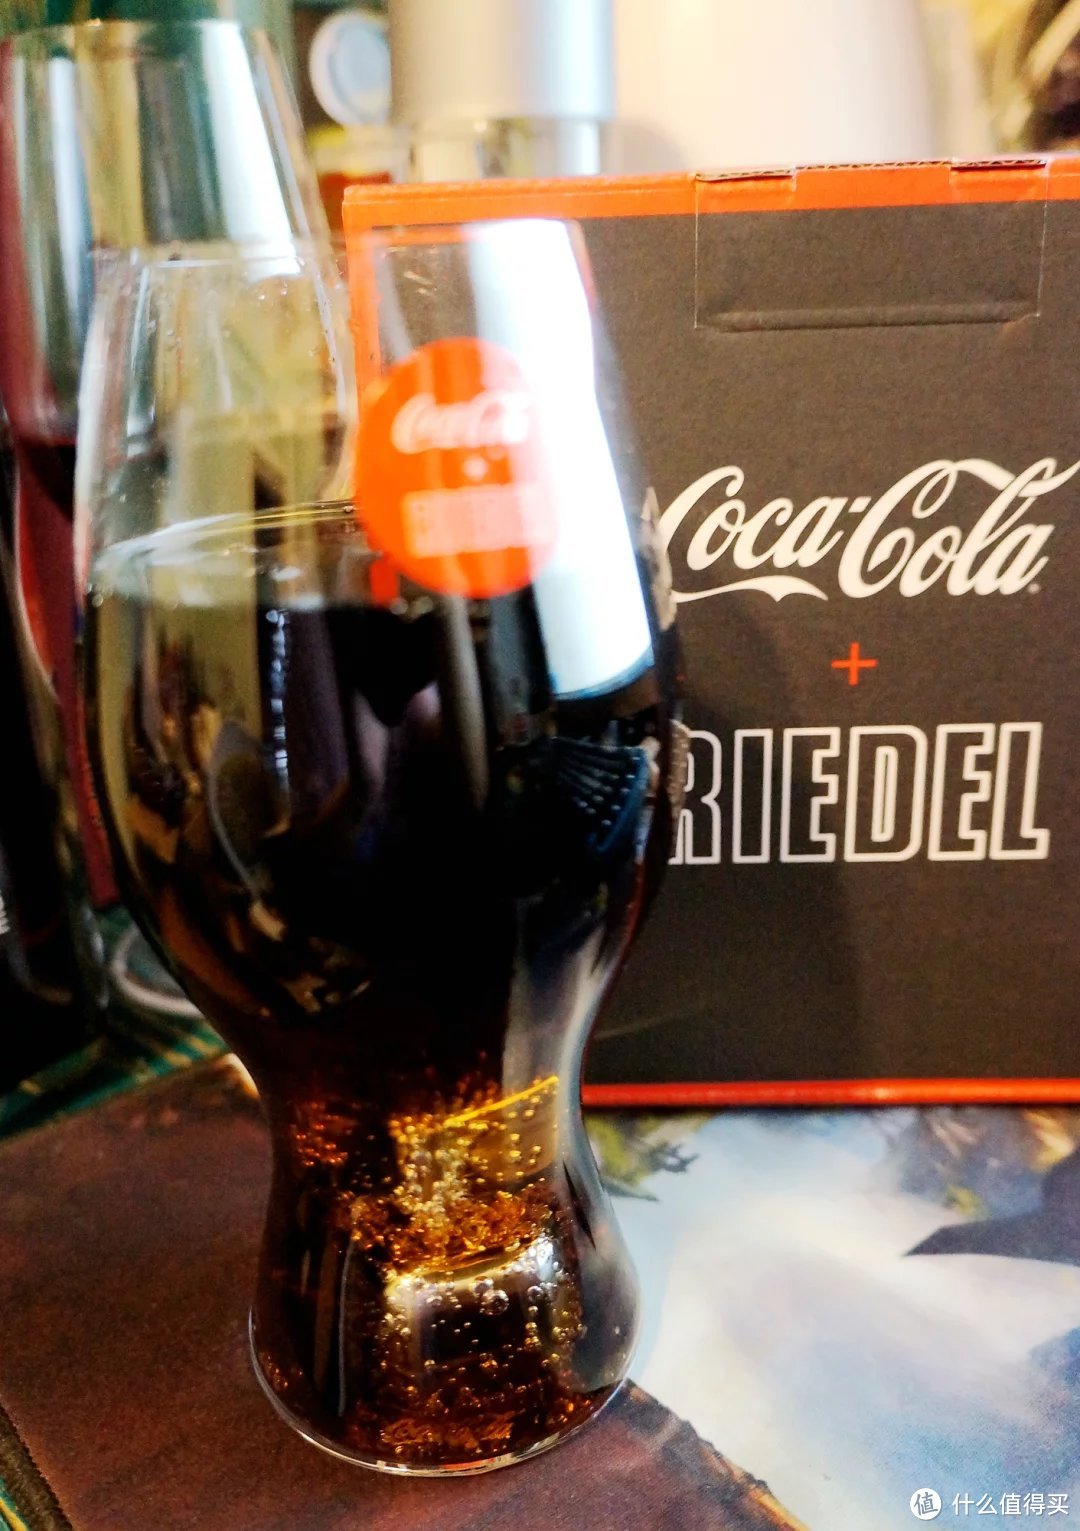 所谓小资，就是用200块的杯子喝两块钱的可乐 — Riedel 醴铎 COCA COLA + RIEDEL 玻璃杯